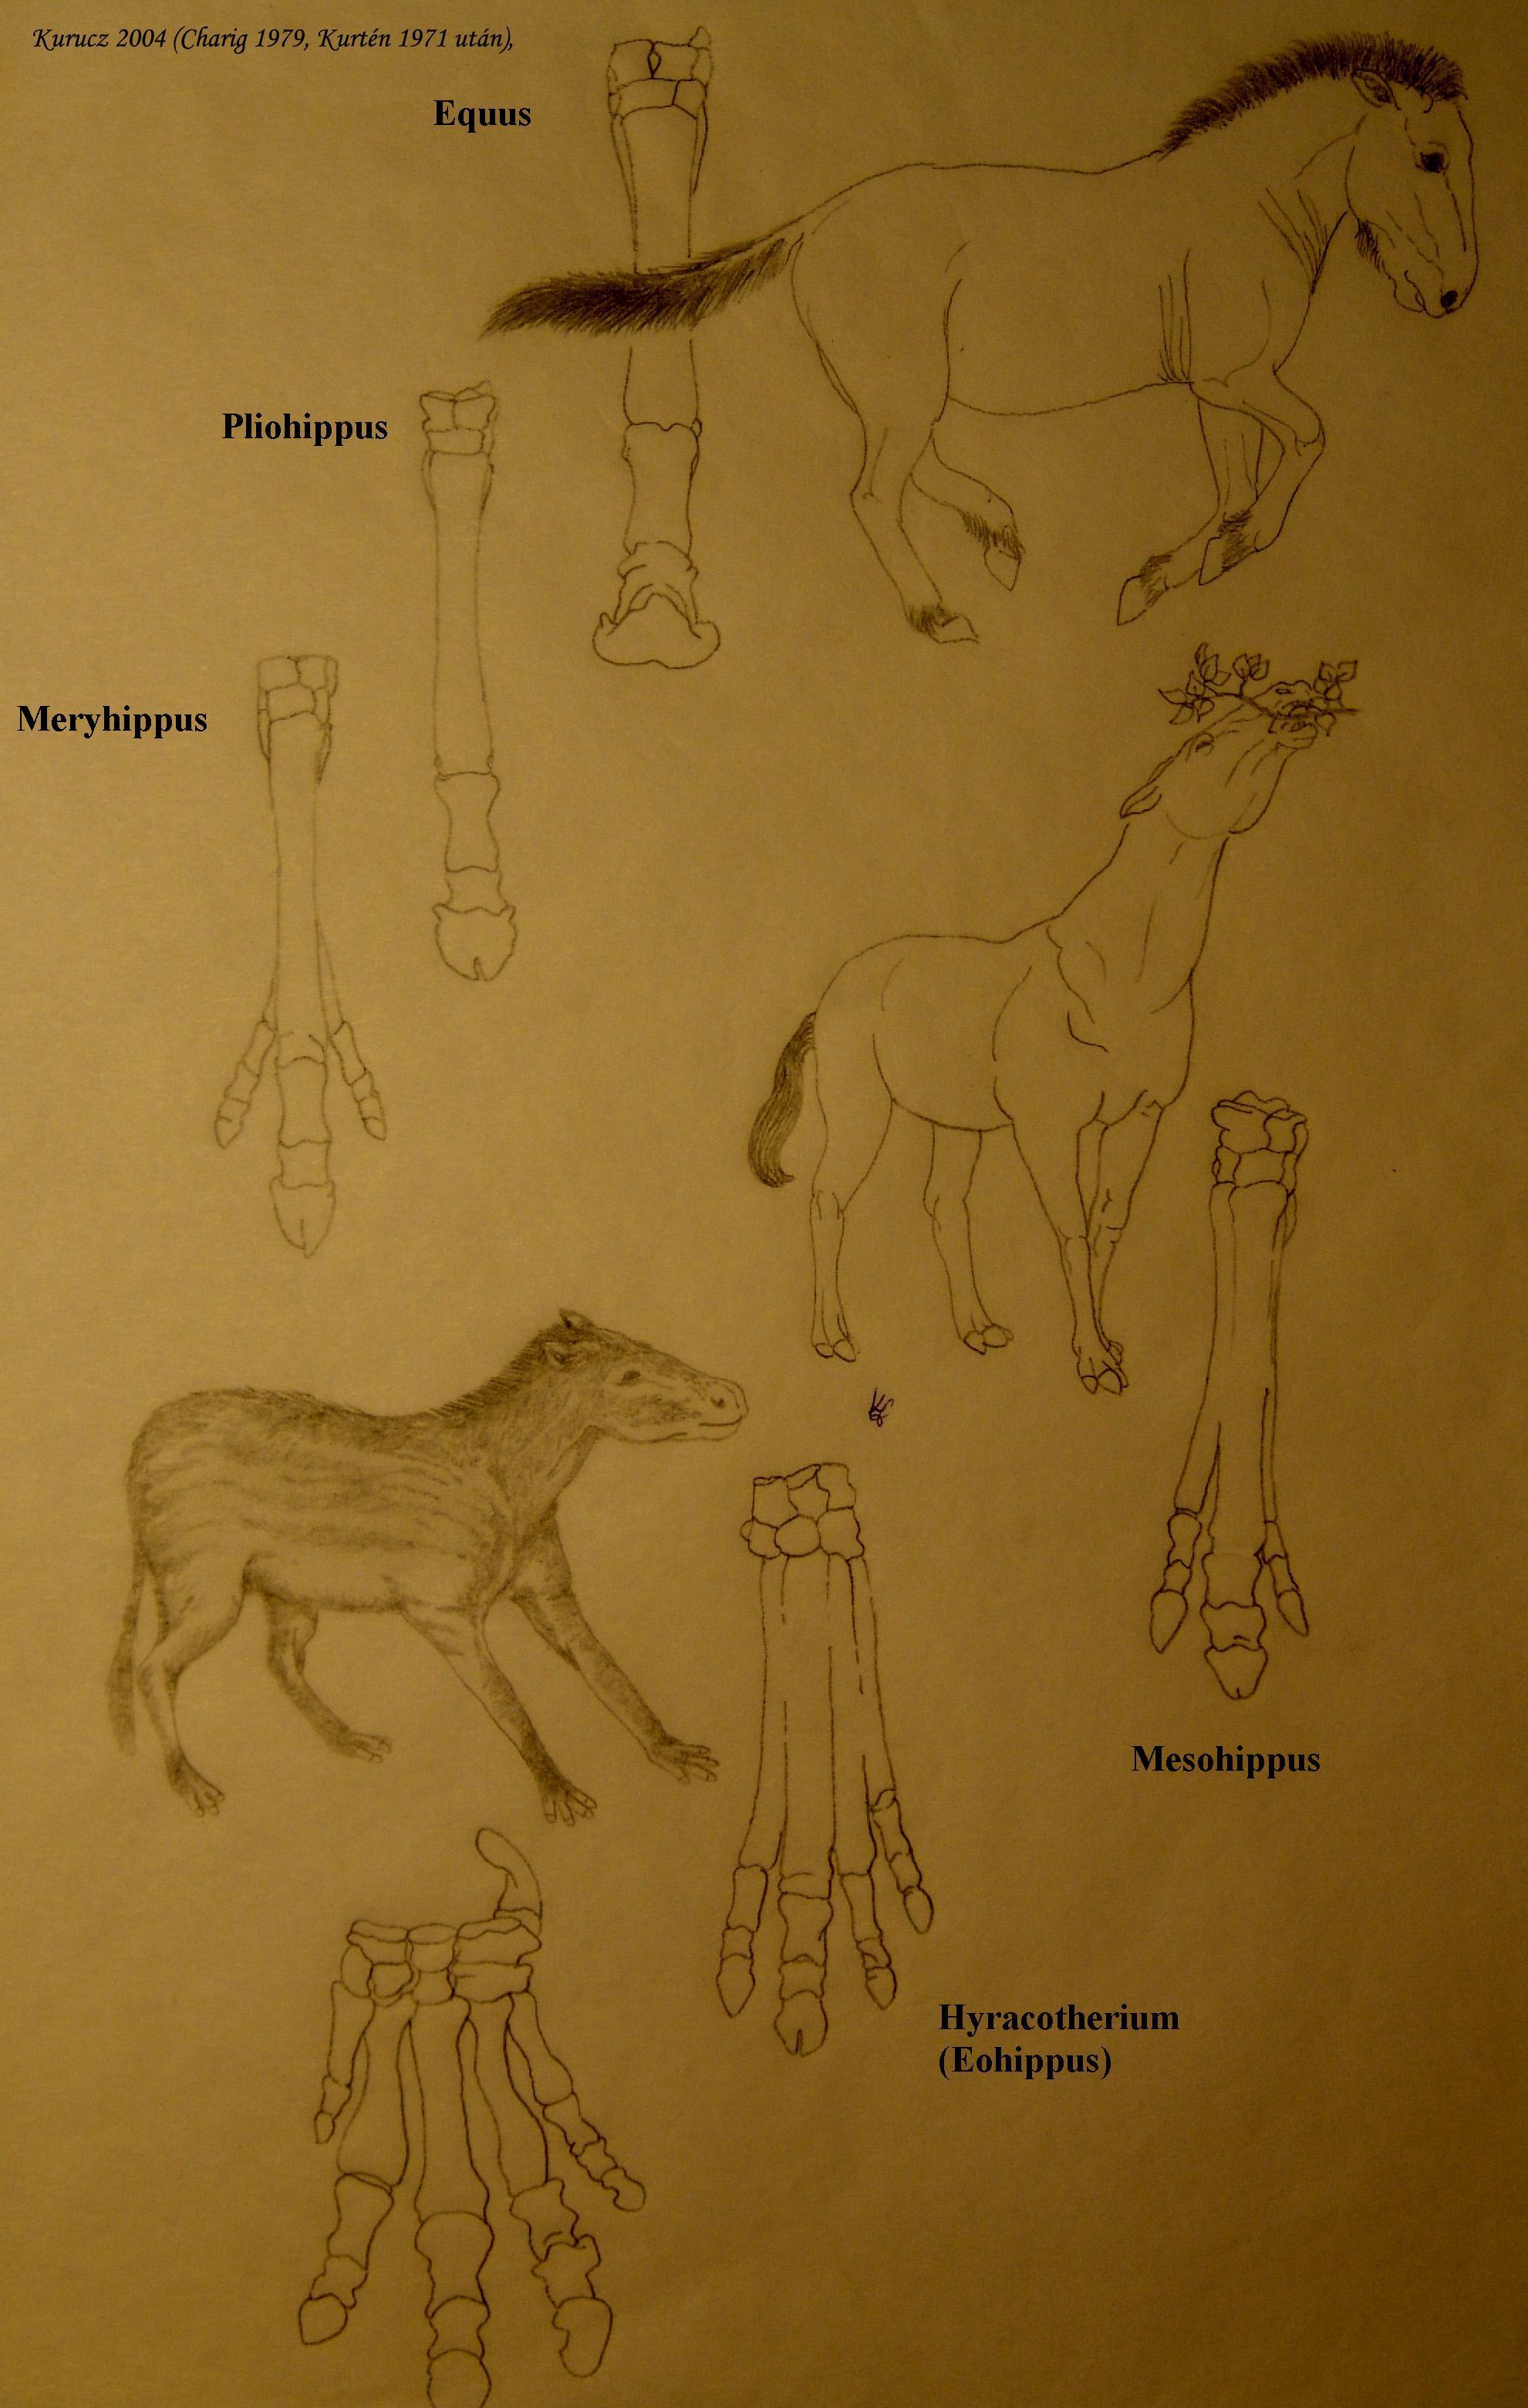 Lovak és lábaik alakulása: A Hyracotherium (alul) az első igazi lóféle kutya méretű volt. Lábain négy ujj nőtt, amelyek közül egy anatómiai szempontból a harmadik kissé hosszabb volt, mivel növekedési rátája meghaladta a többiét. Ahogy a lófélék mérete nőtt, az oldalsó ujjak elvesztették kapcsolatukat a talajjal, a harmadik ujj metakarpális ízének allometrikus növekedése miatt. Később az oldalsó ujjak elcsökevényesedtek egy további genetikai változás miatt.